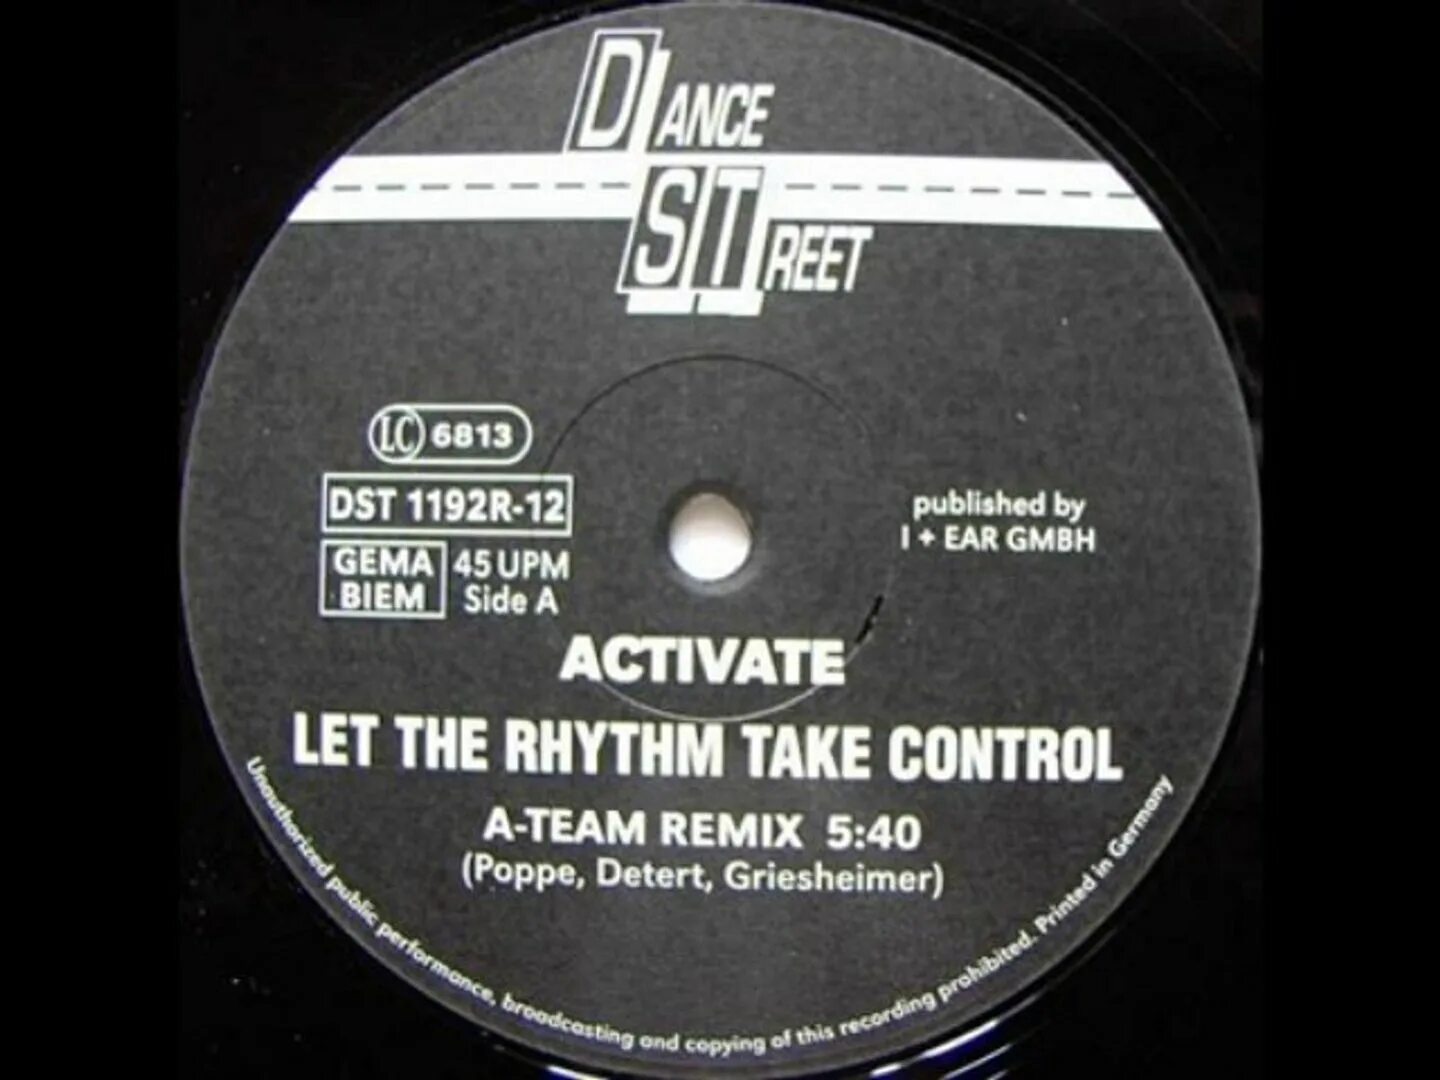 Let the rhythm take control